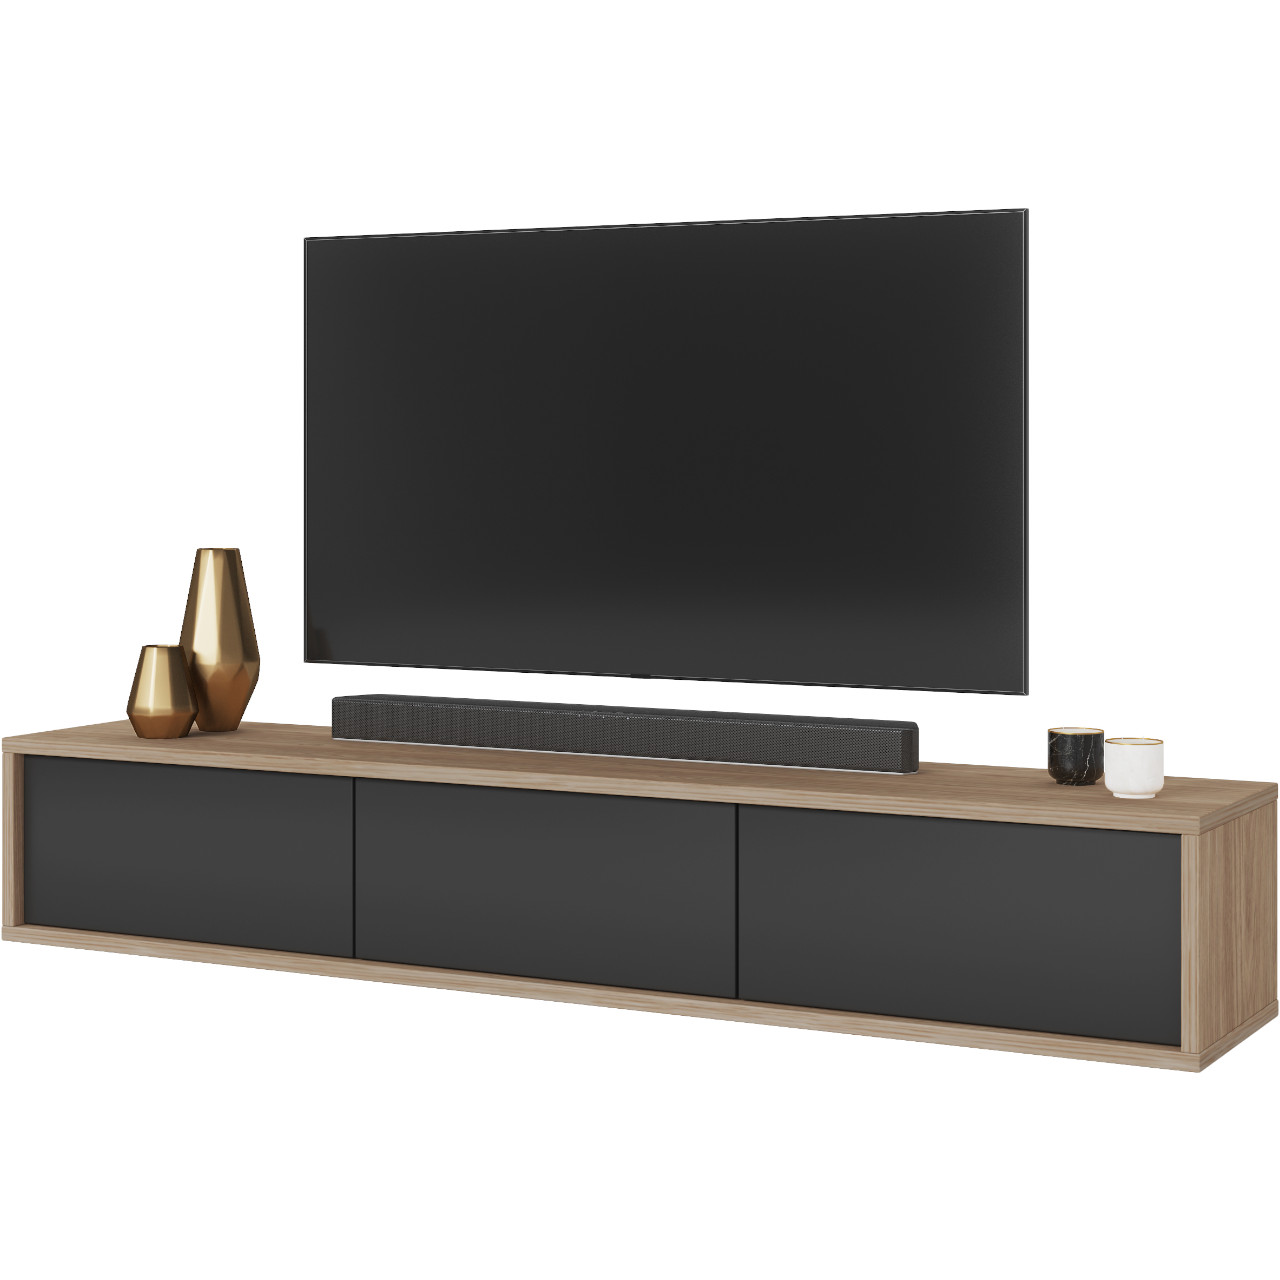 TV cabinet RIDAF 38 oak / anthracite